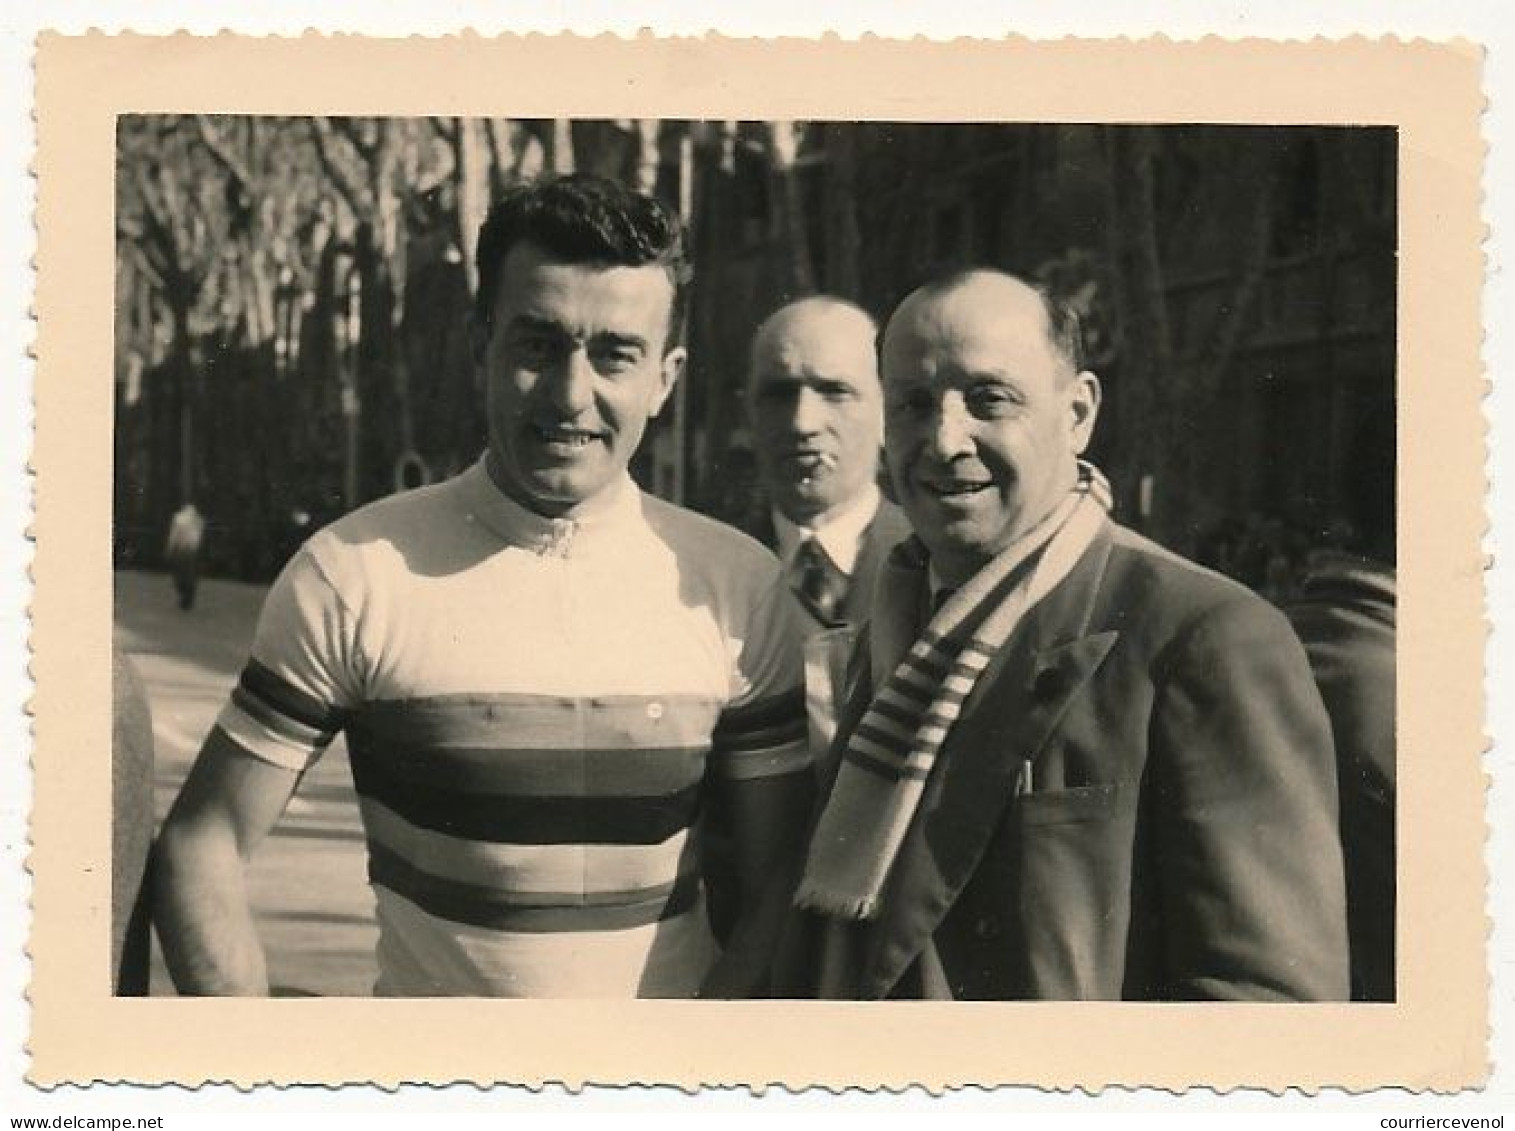 Photo Amateur 8cm X 11cm - Louison BOBET (Champion Cycliste - Photo Prise à Aix En Provence) - Sports